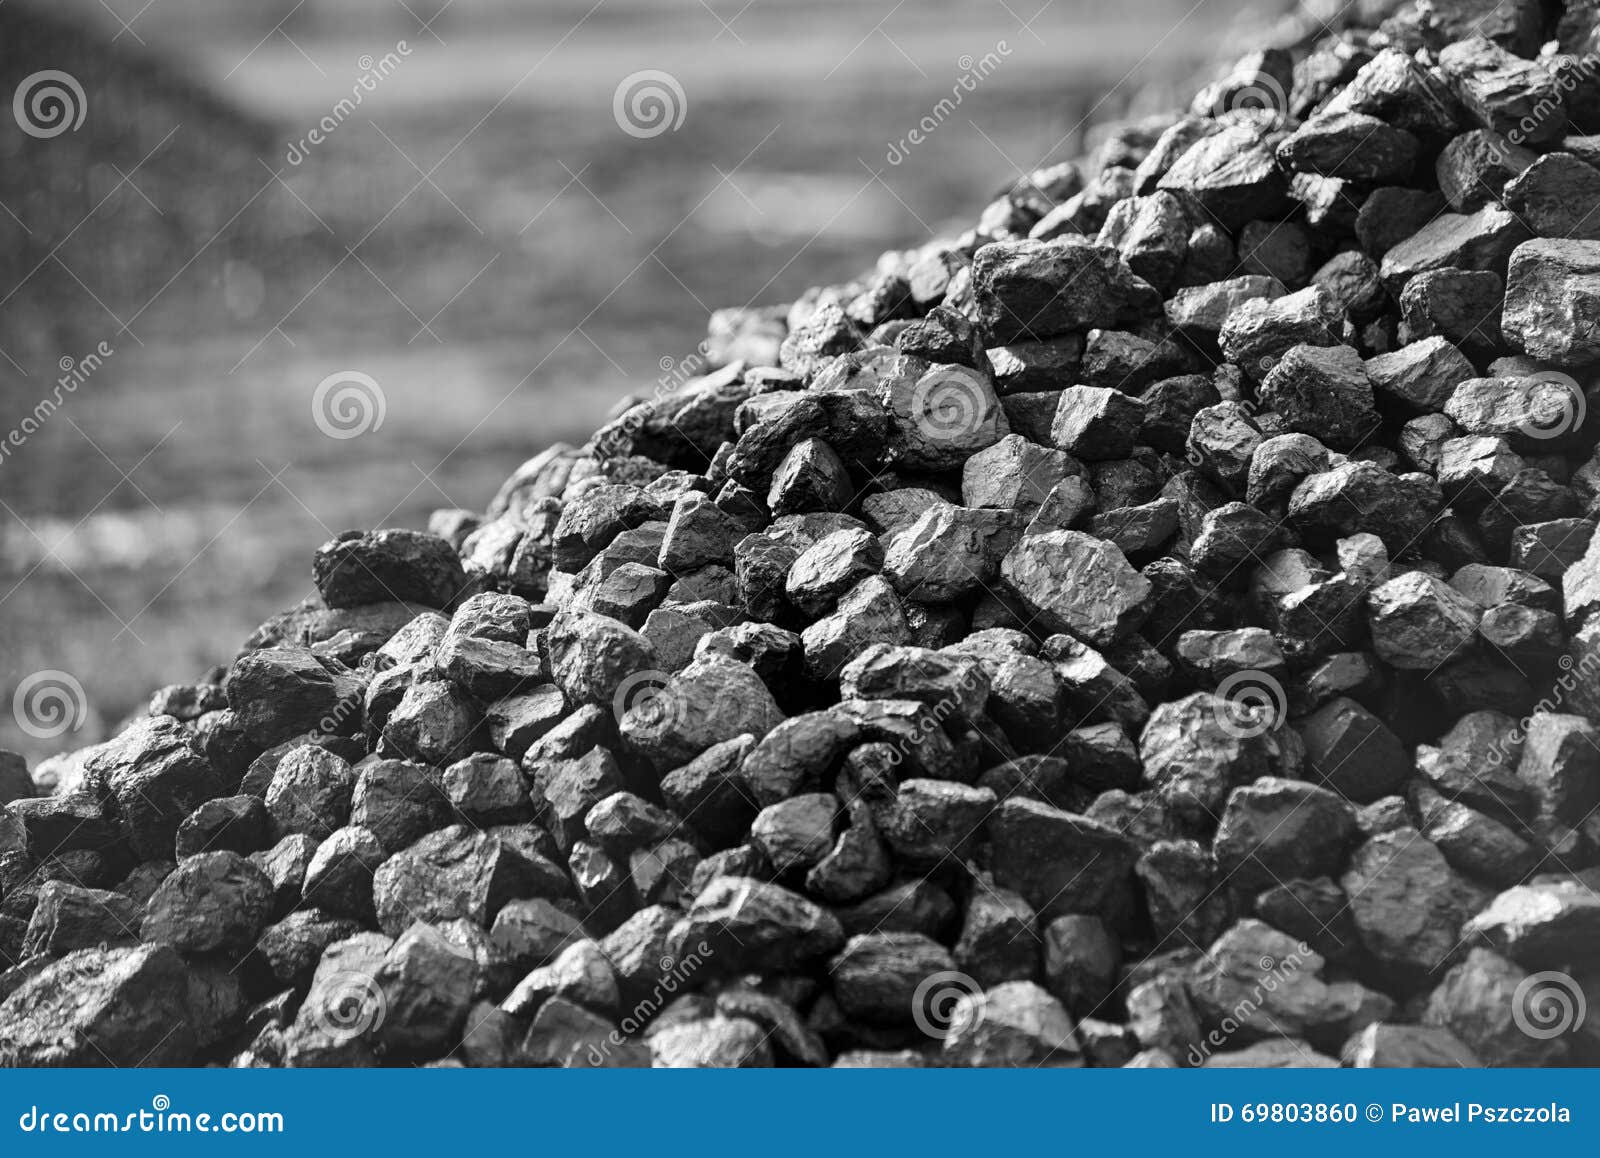 heap of coal.